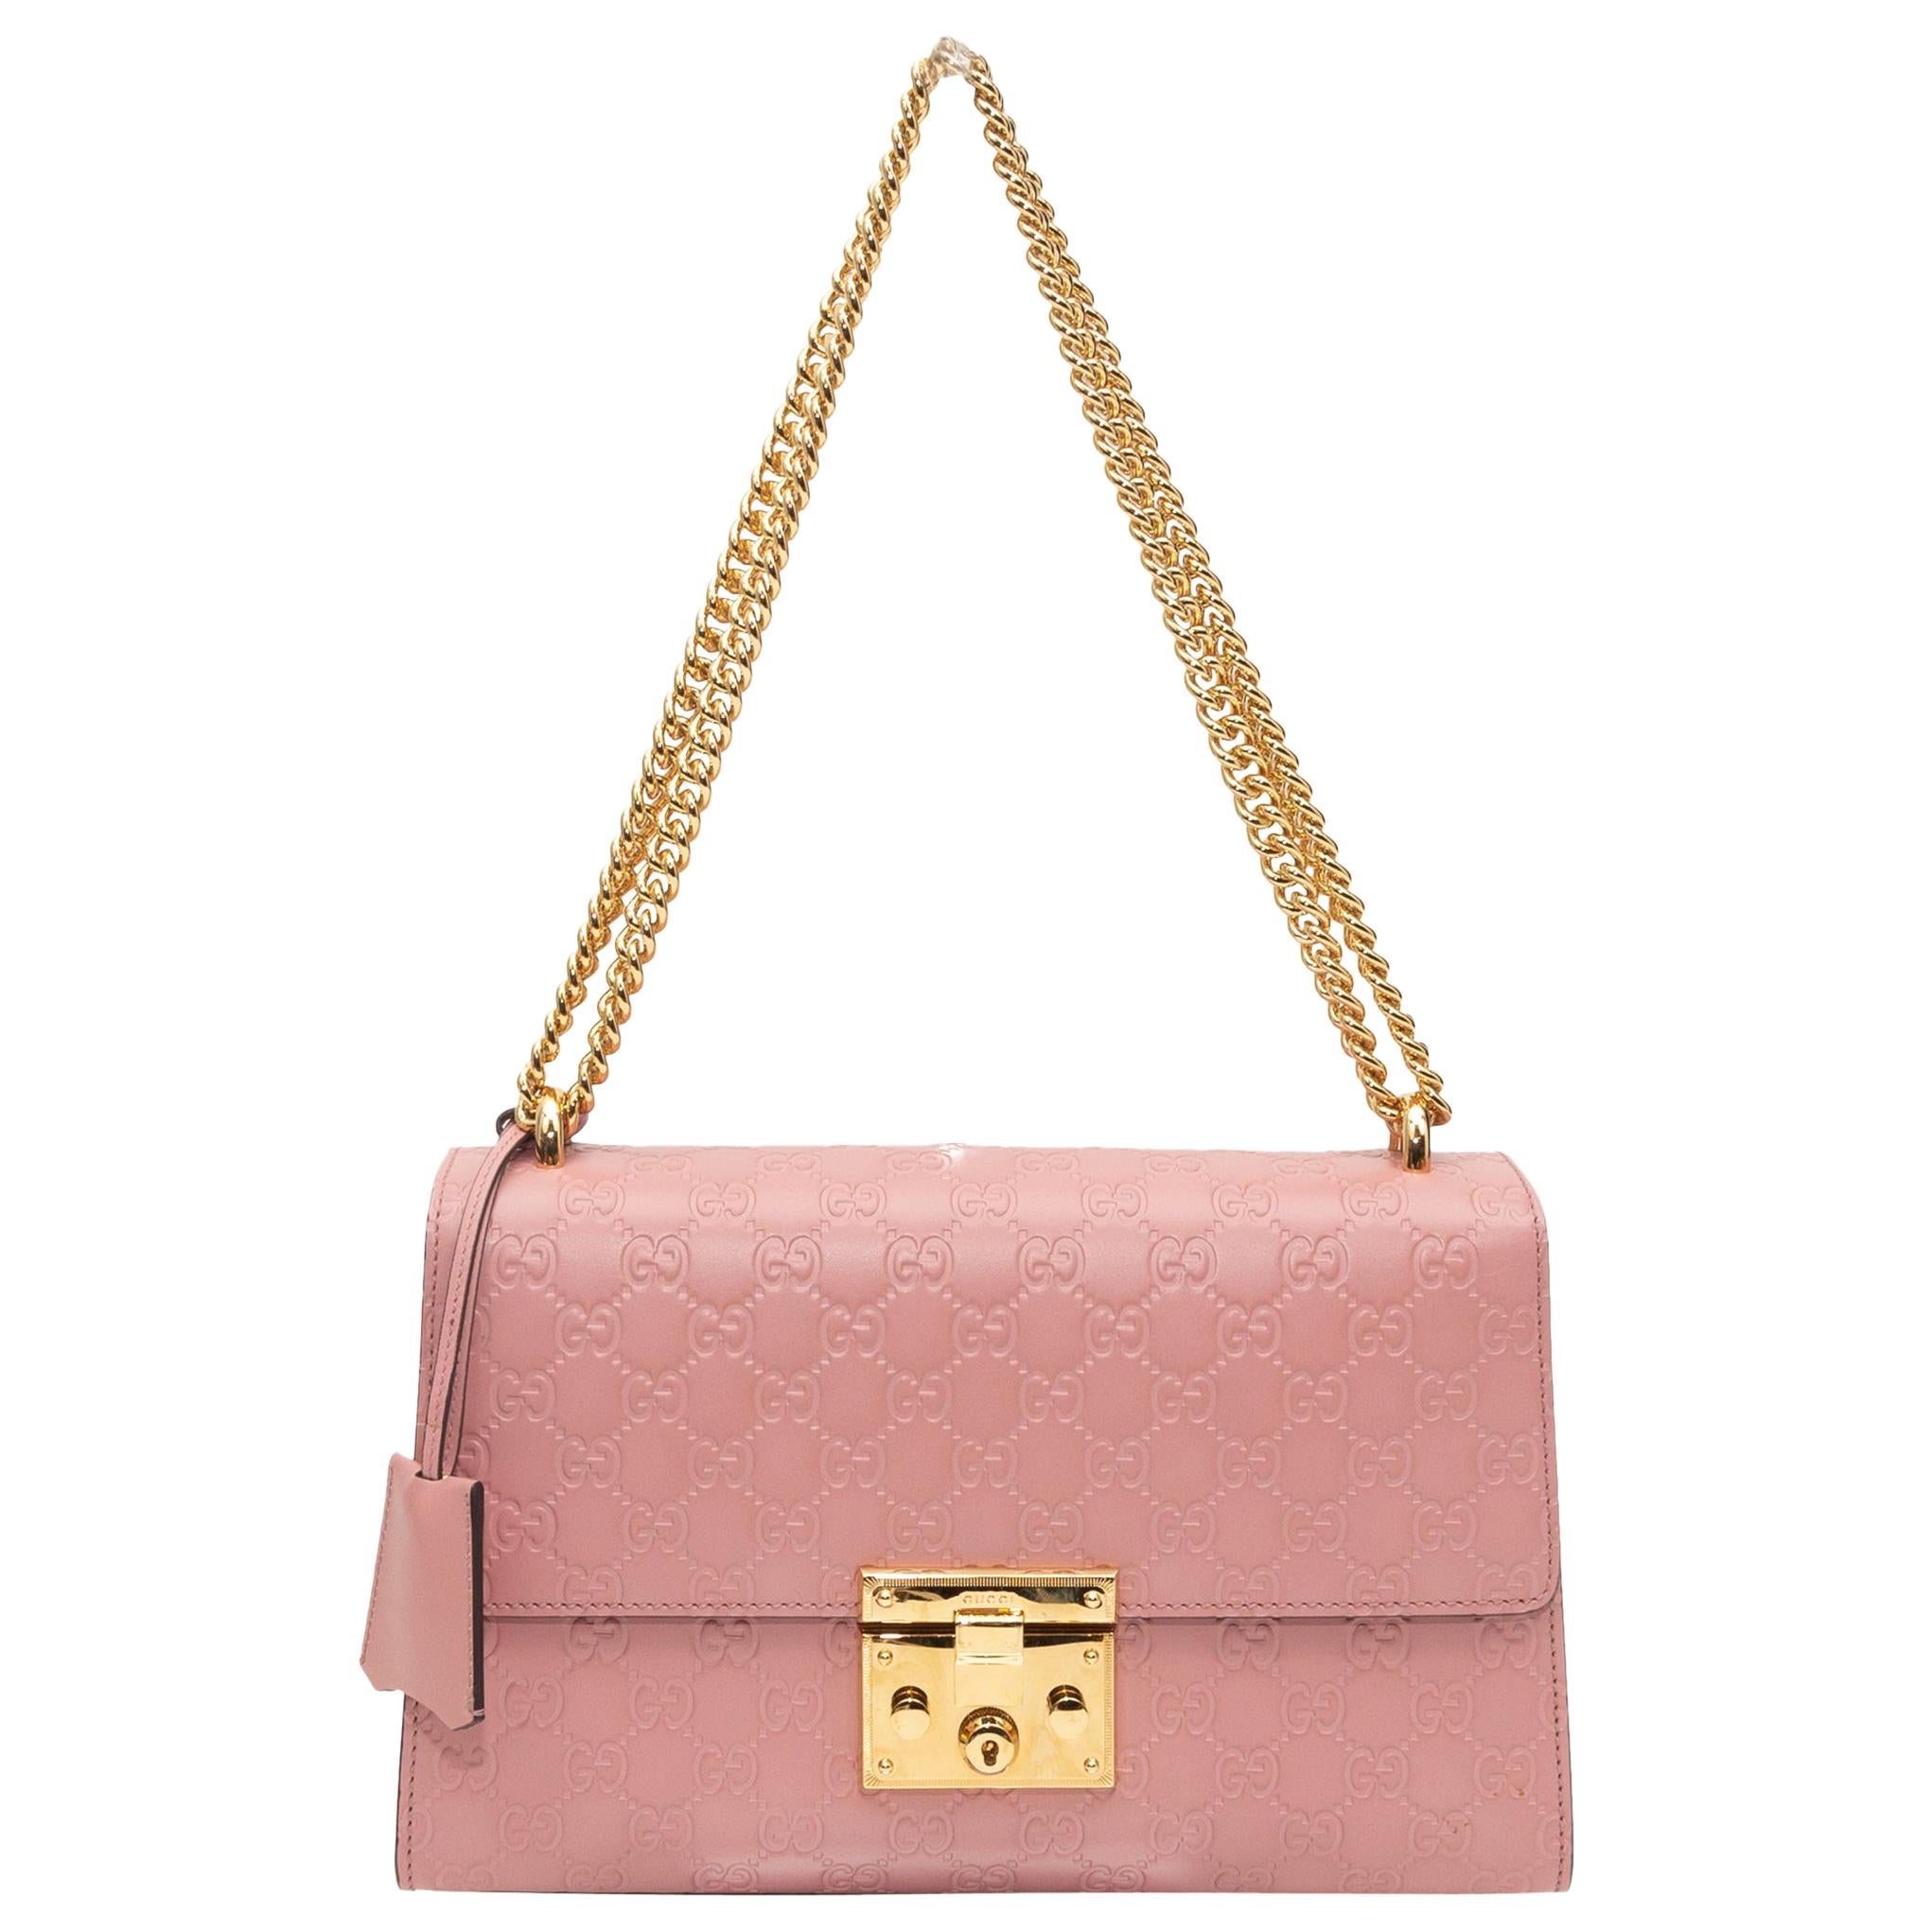 Gucci Light Pink Medium Guccissima Padlock Shoulder Bag